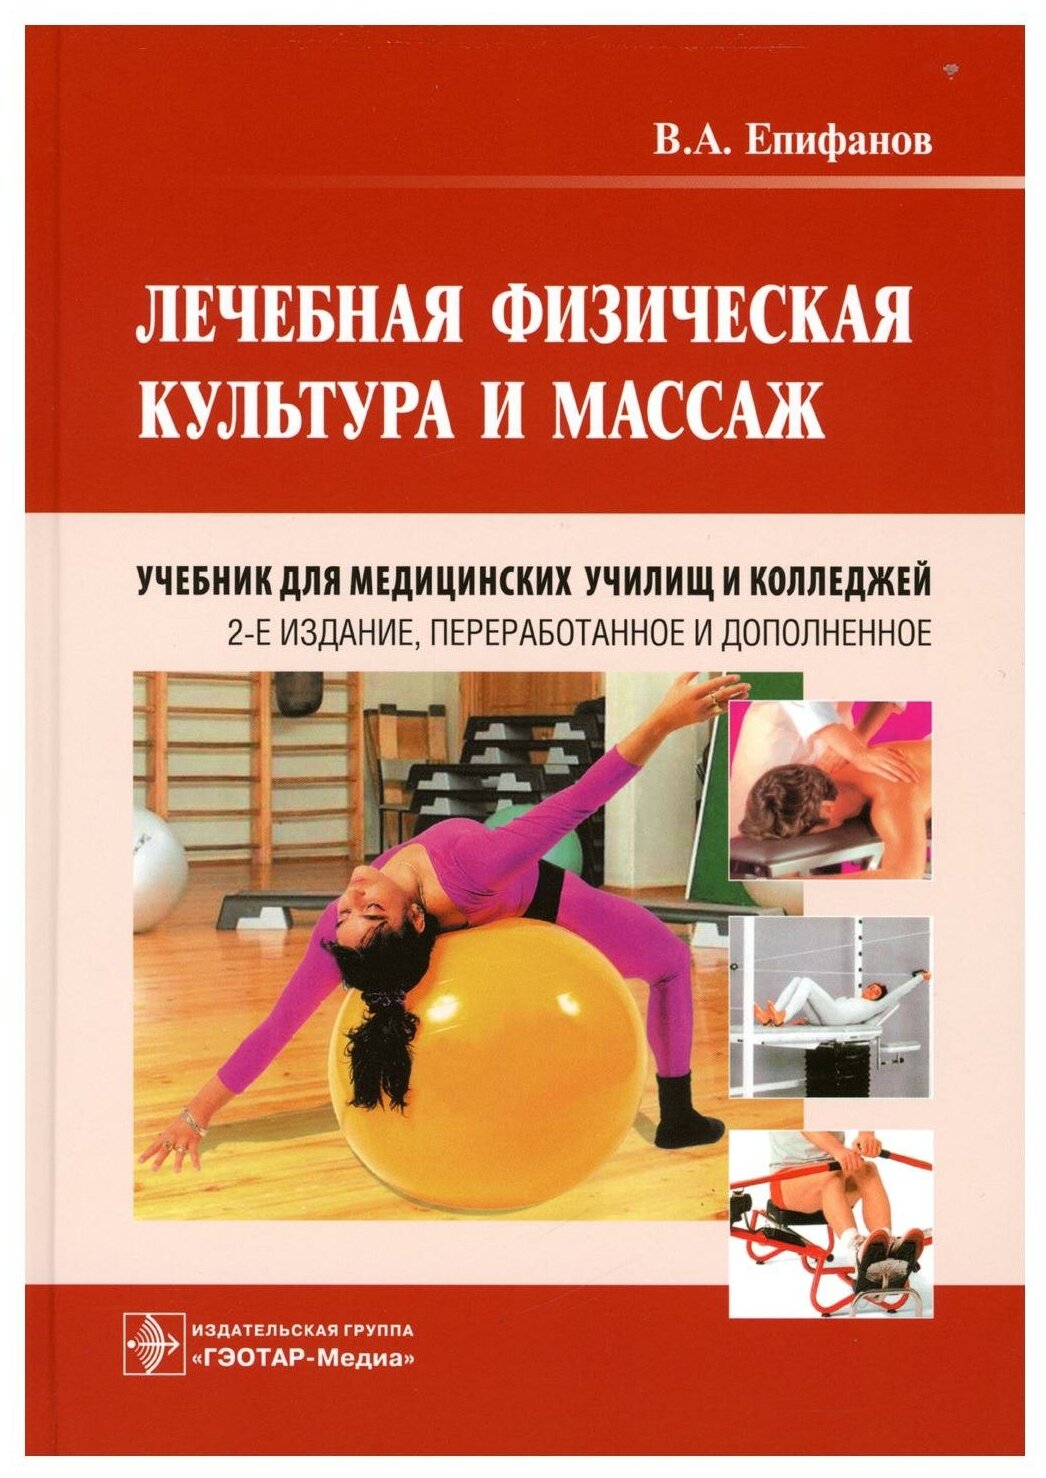 Лечебная физическая культура и массаж: учебник. 2-е изд, перераб. и доп. Епифанов В. А. гэотар-медиа